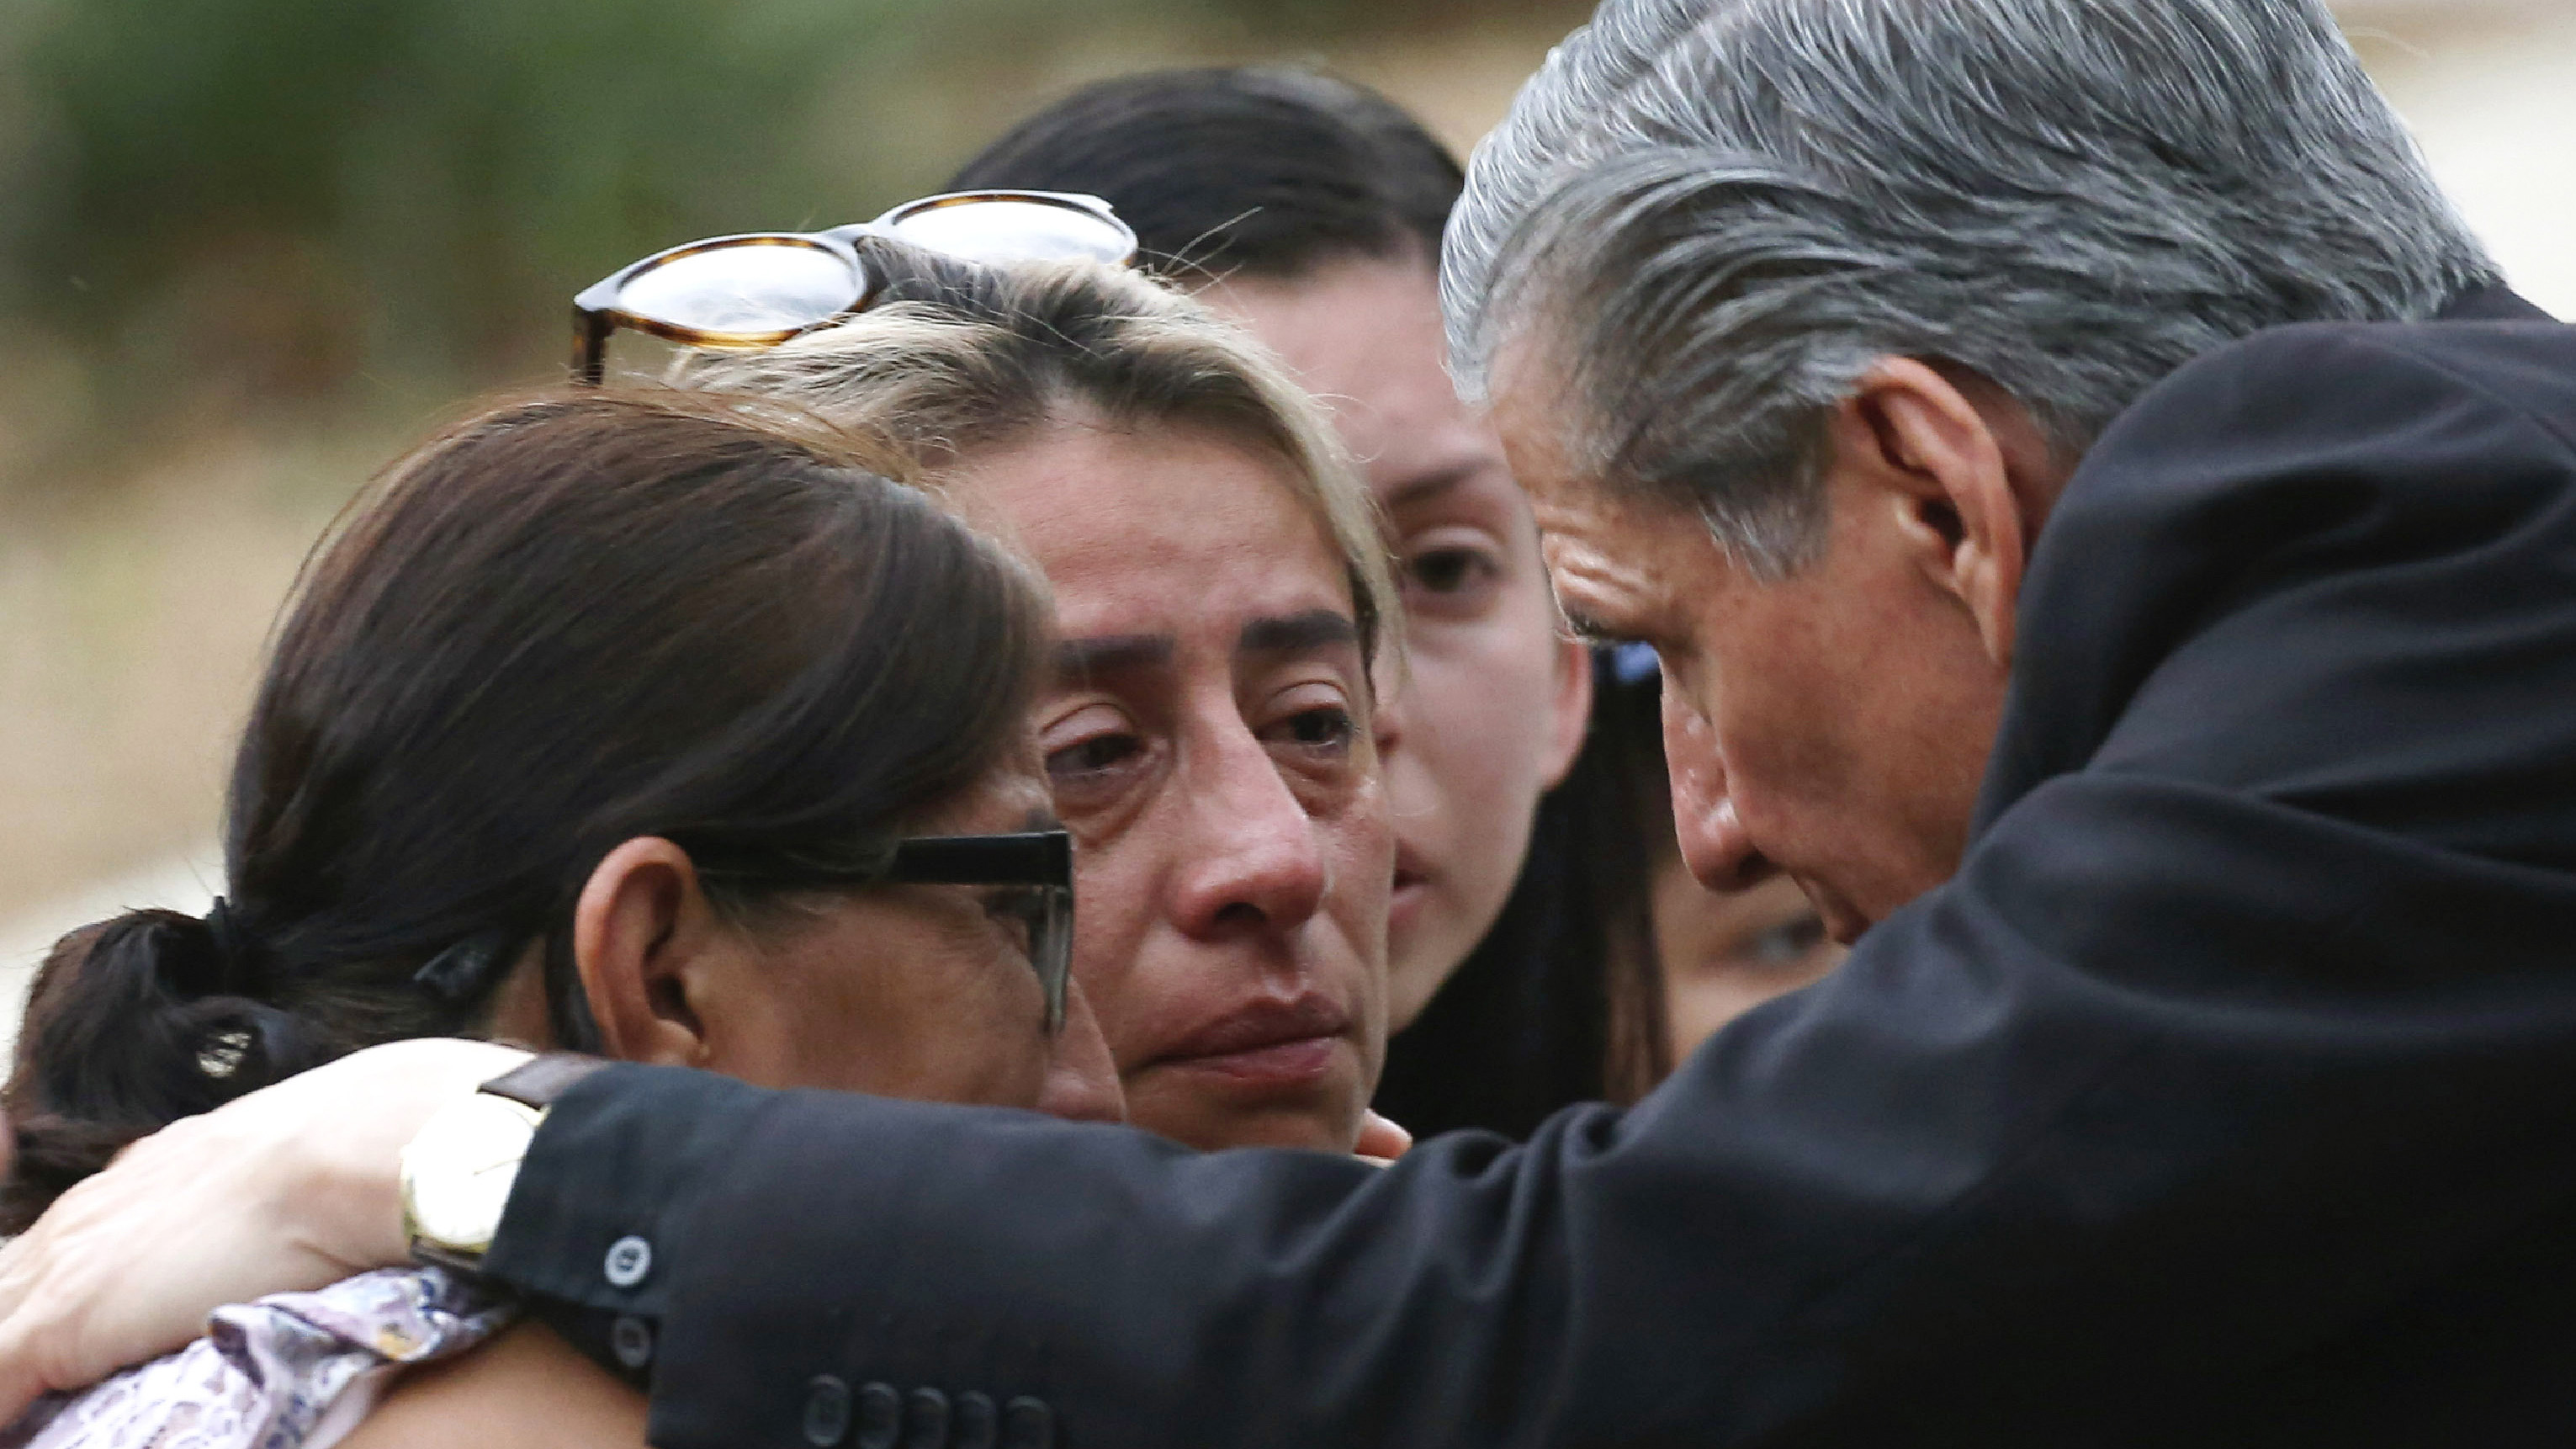 El arzobispo de San Antonio, Gustavo García-Siller, a la derecha, consuela a las familias afuera del Centro Cívico luego de un tiroteo mortal en la Escuela Primaria Robb en Uvalde, Texas.